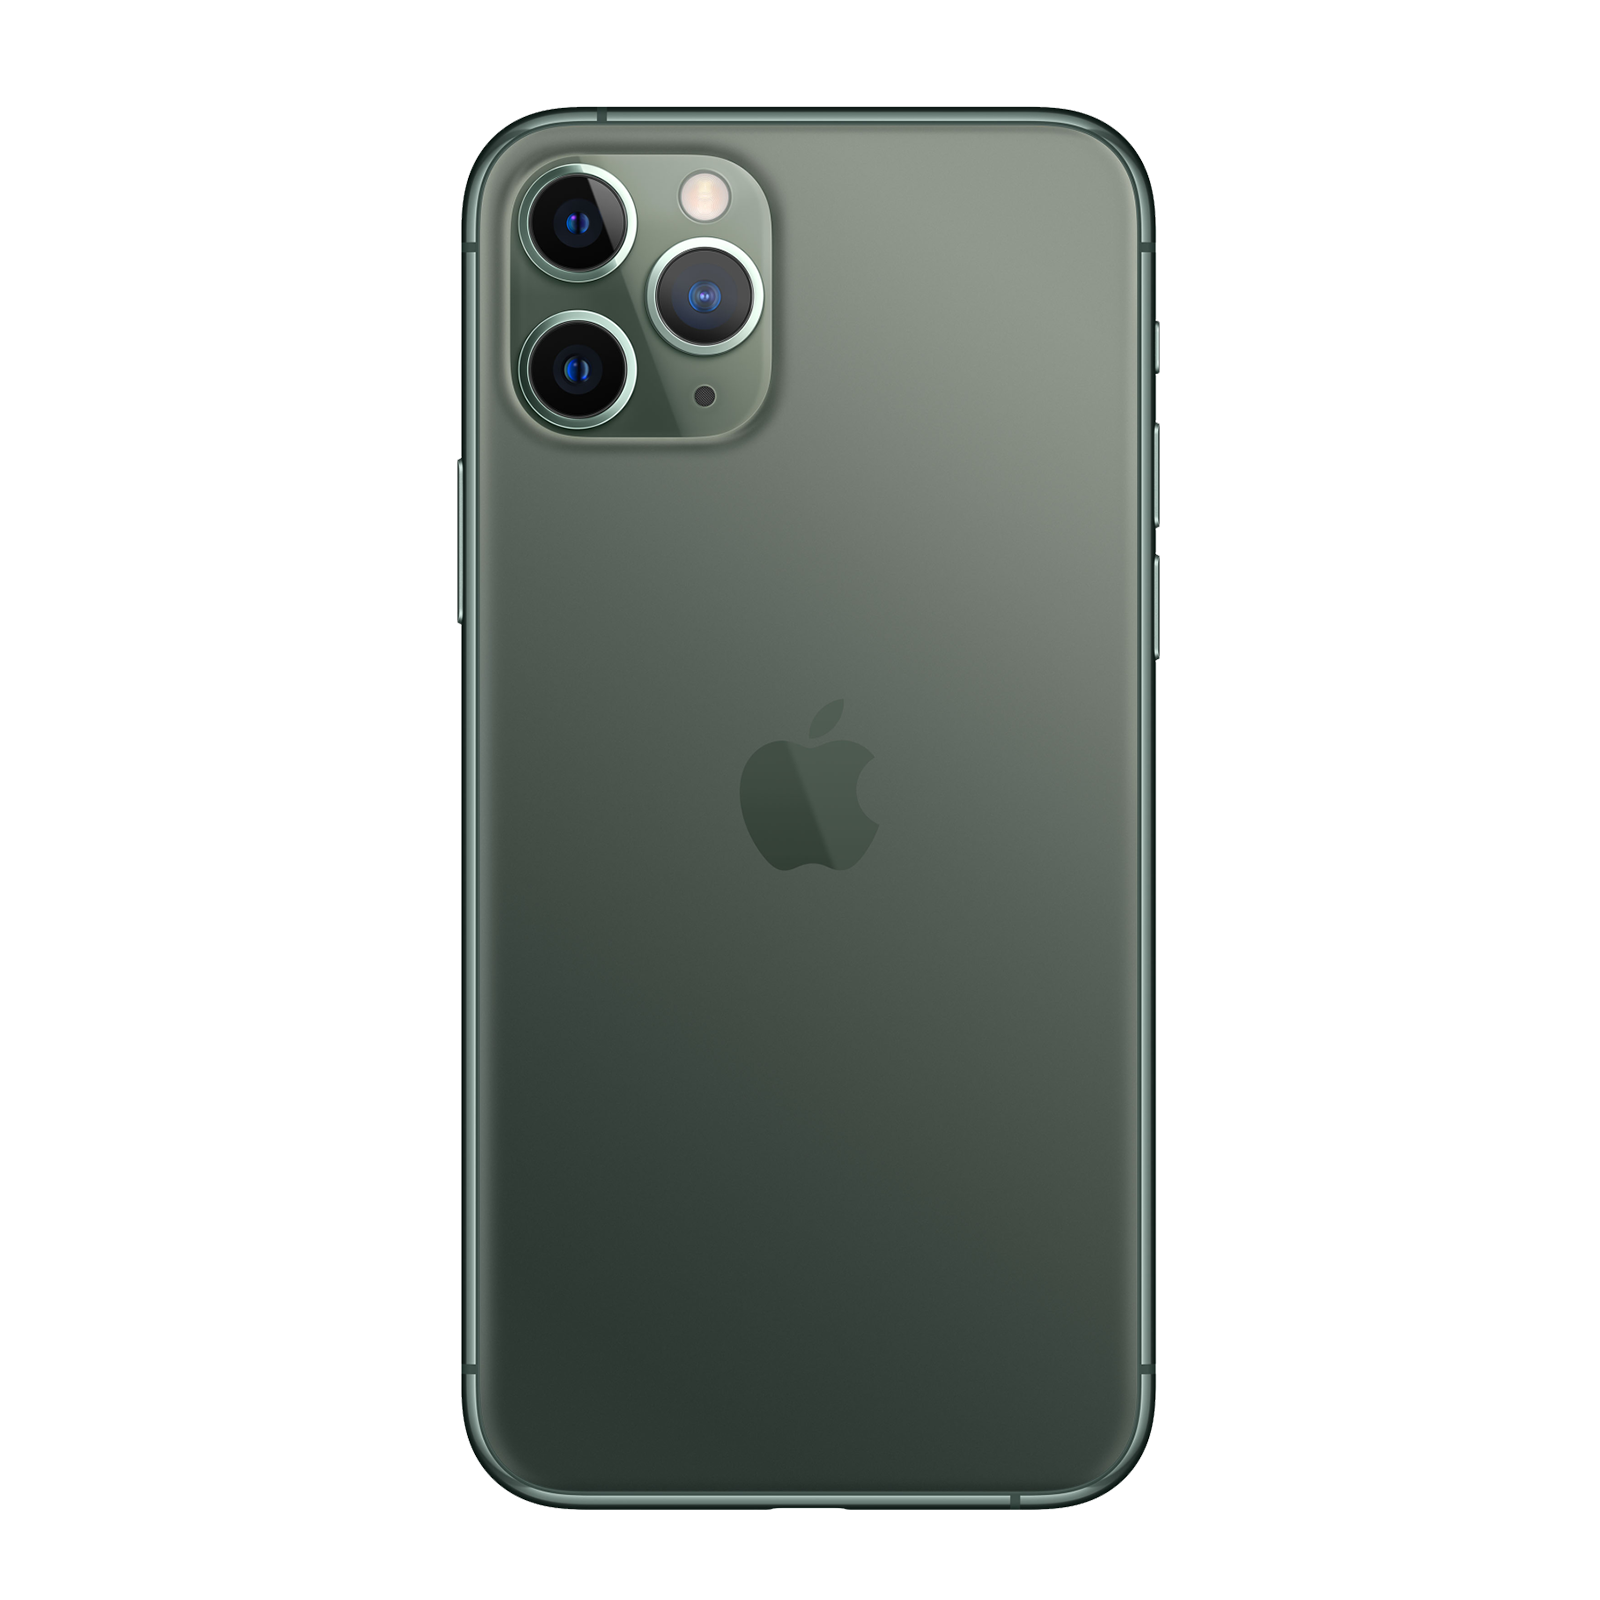 Apple iPhone 11 Pro Max 256GB Midnight Green Fair - AT&T